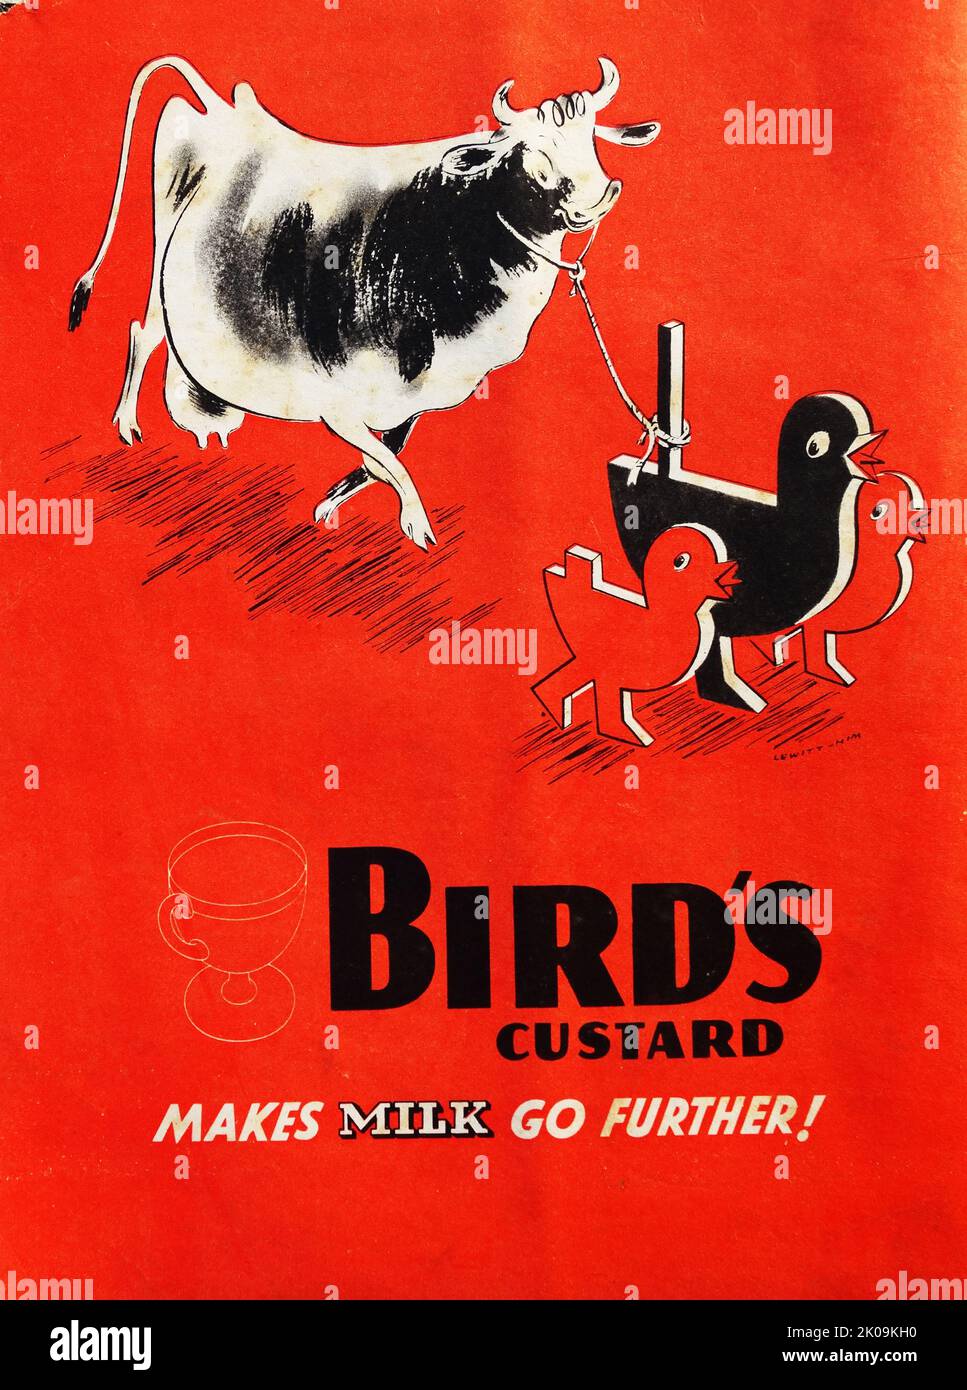 Zeitungsanzeige für Bird's Custard. Bird's Custard ist der Markenname für das ursprüngliche Puderpuder ohne Eier. Das Produkt ist ein Pulver auf Basis von Maismehl, das sich verdickt, um eine puderartige Sauce zu bilden, wenn es mit Milch vermischt und erhitzt wird. Stockfoto